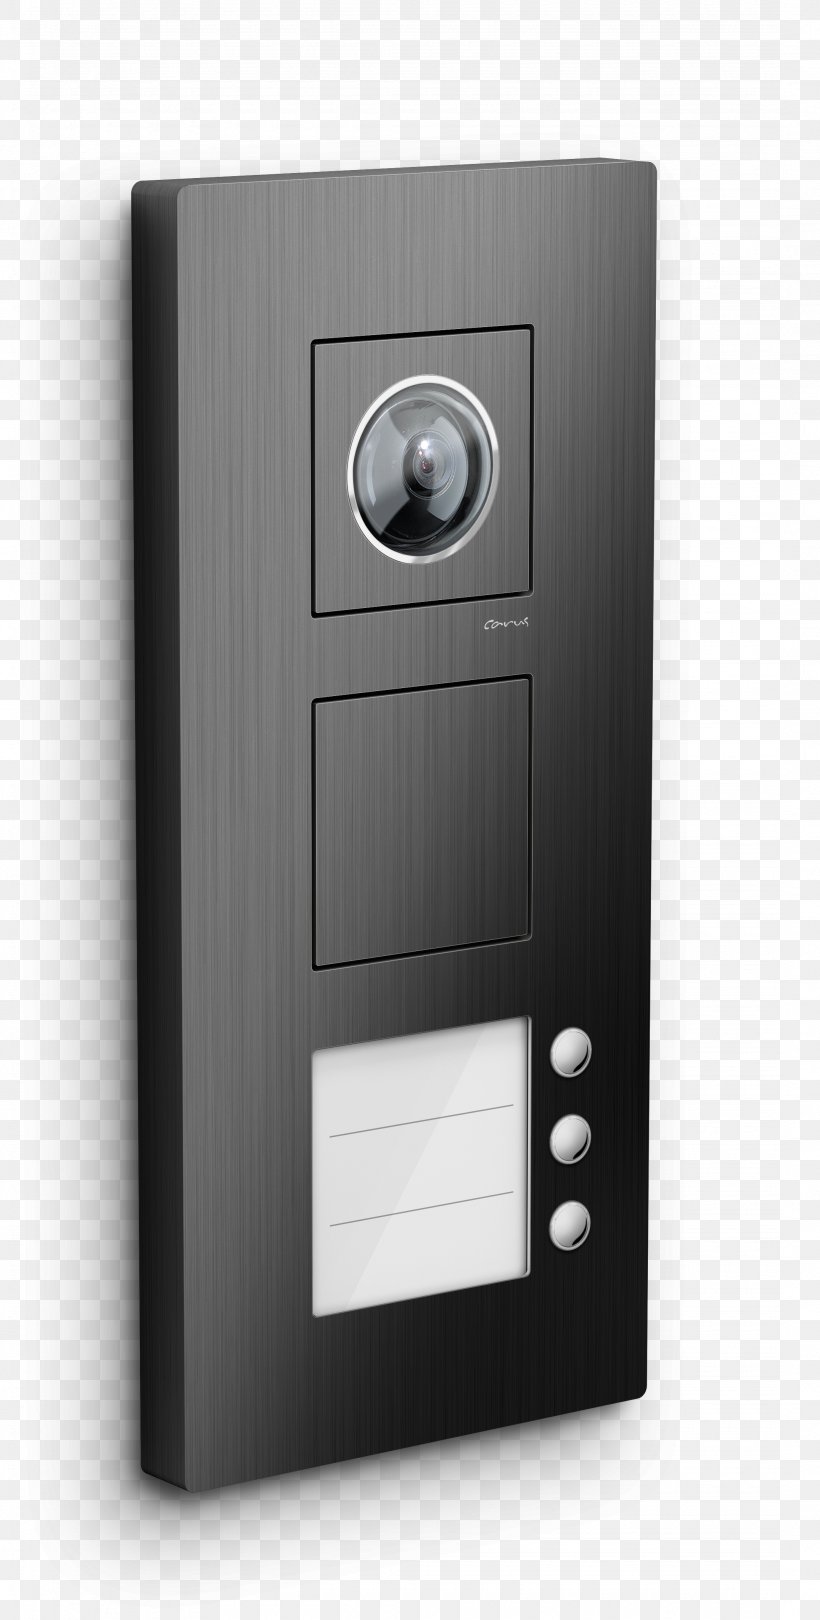 Intercom Door Phone Wideodomofon House, PNG, 2150x4250px, Intercom, Door, Door Phone, Electronic Device, House Download Free